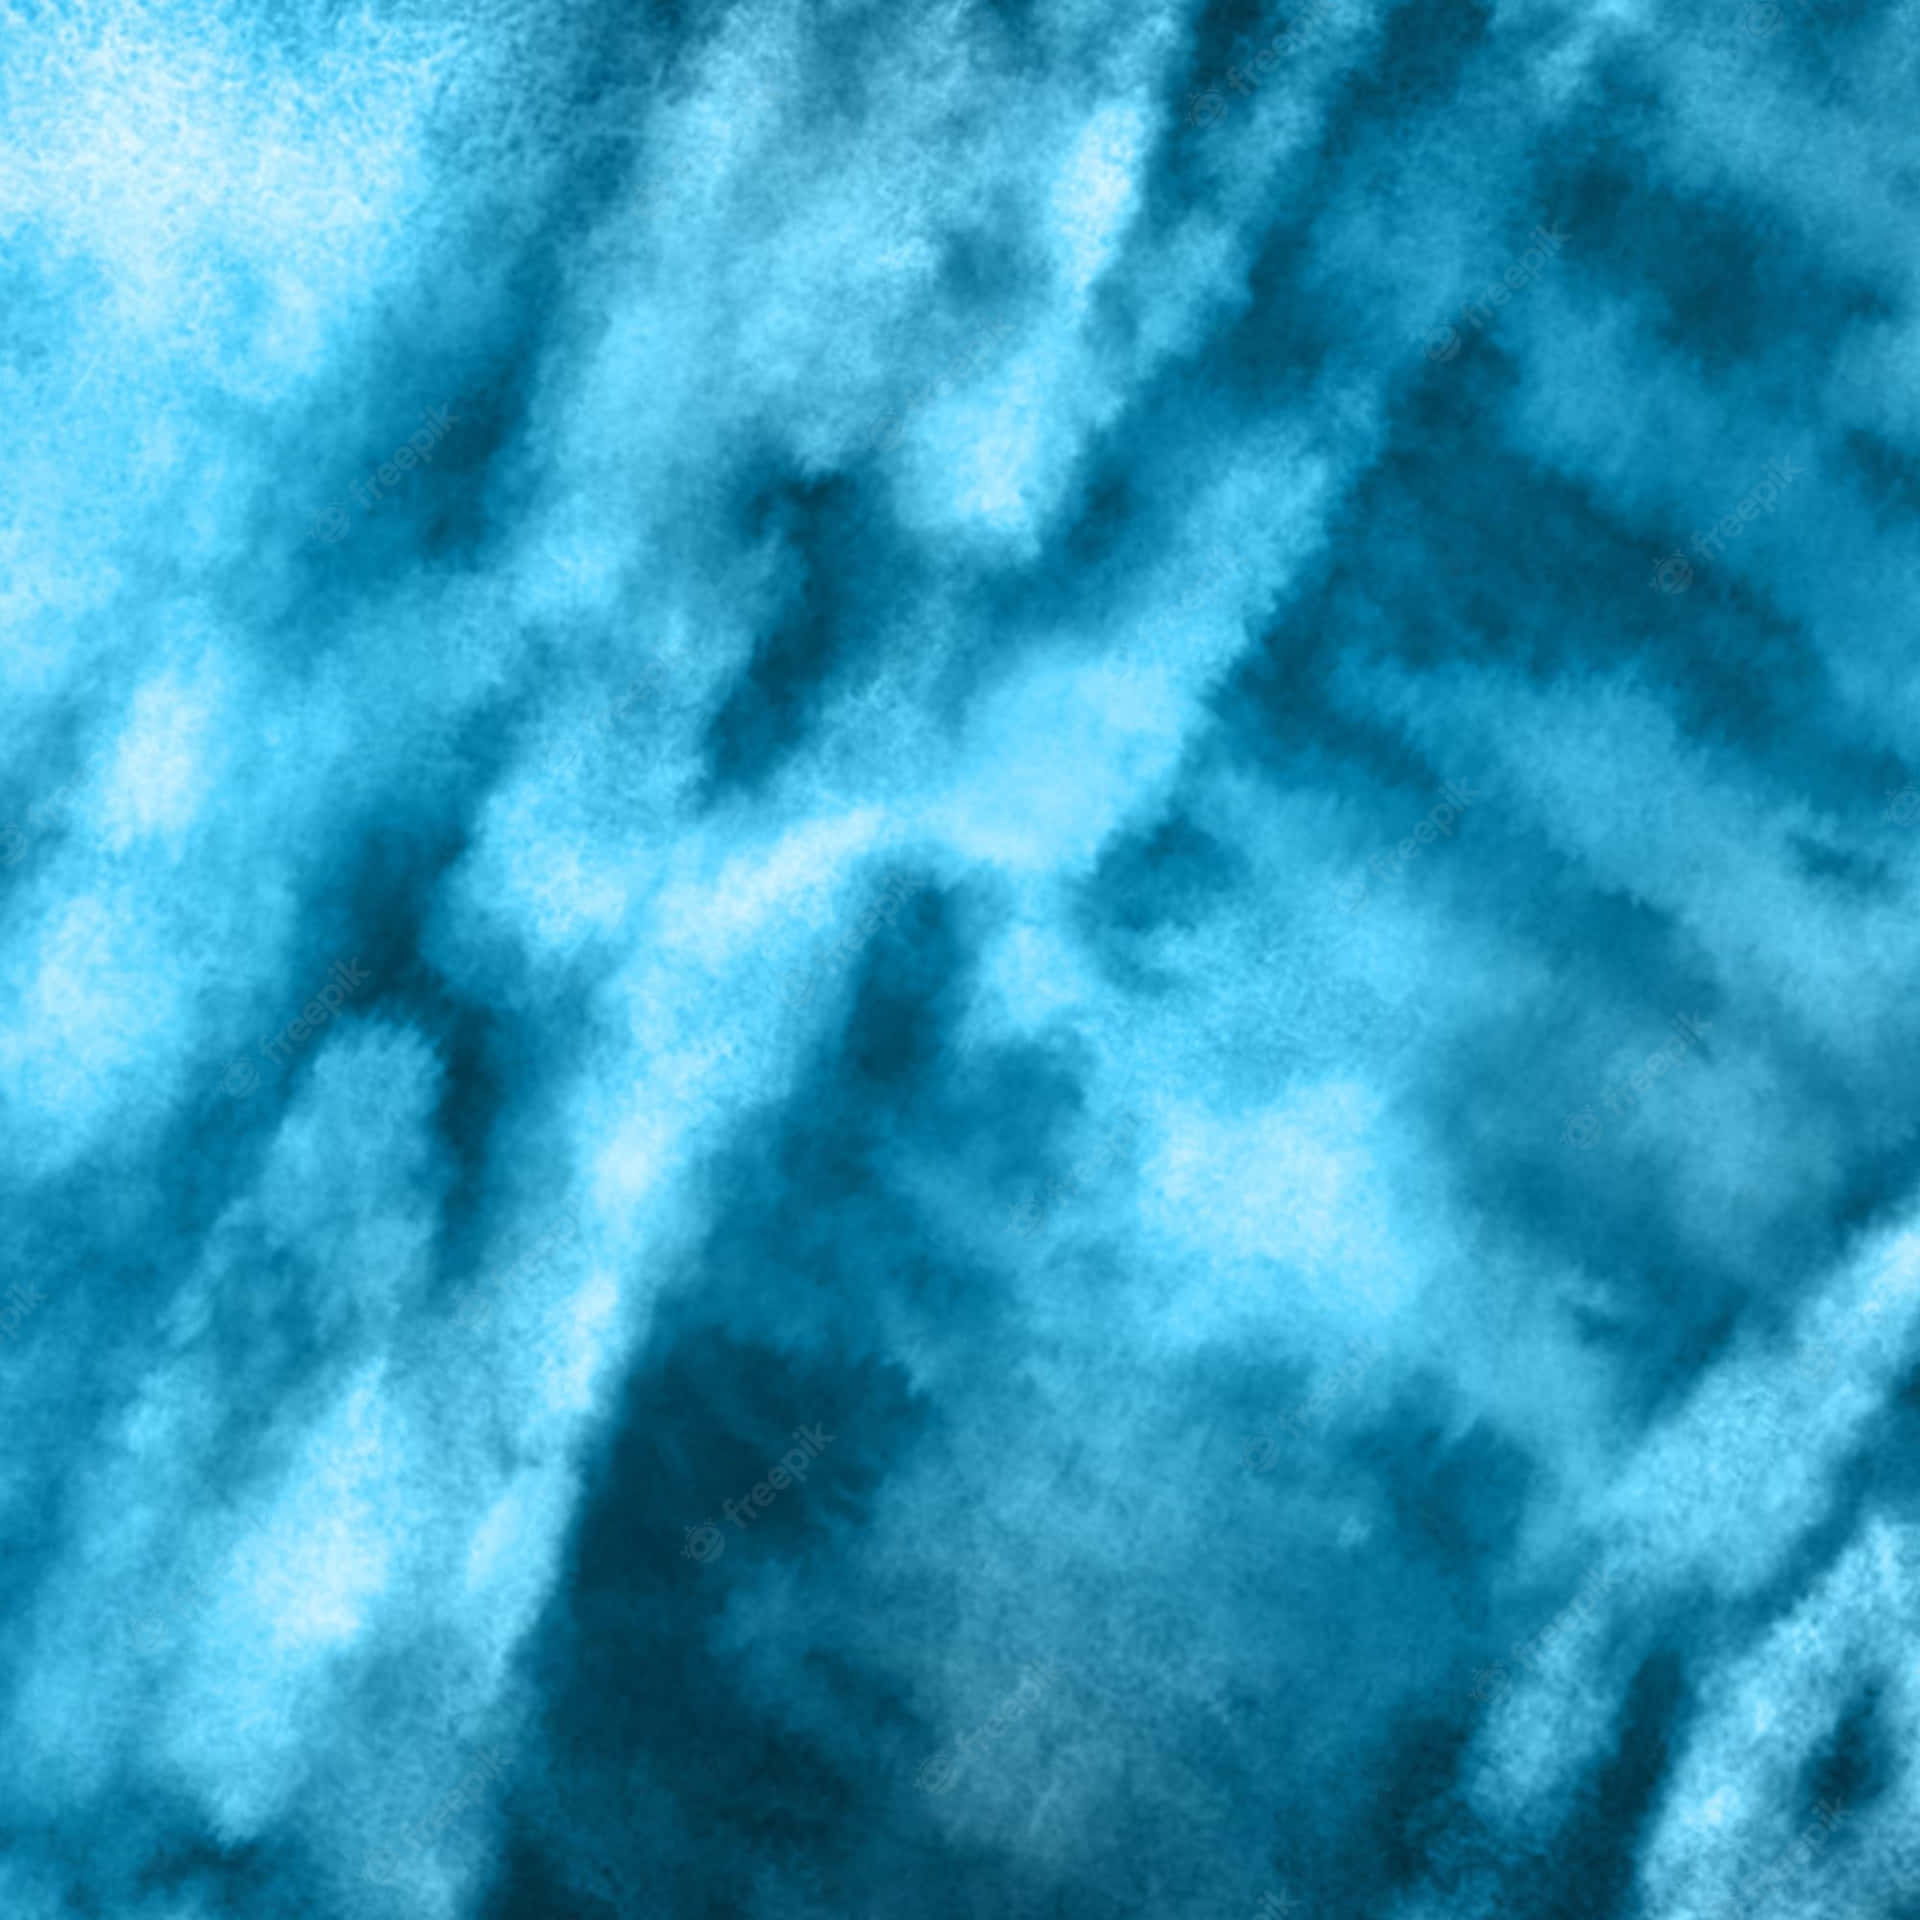 Imagemobra De Arte Em Estilo Tie-dye Azul Brilhante. Papel de Parede